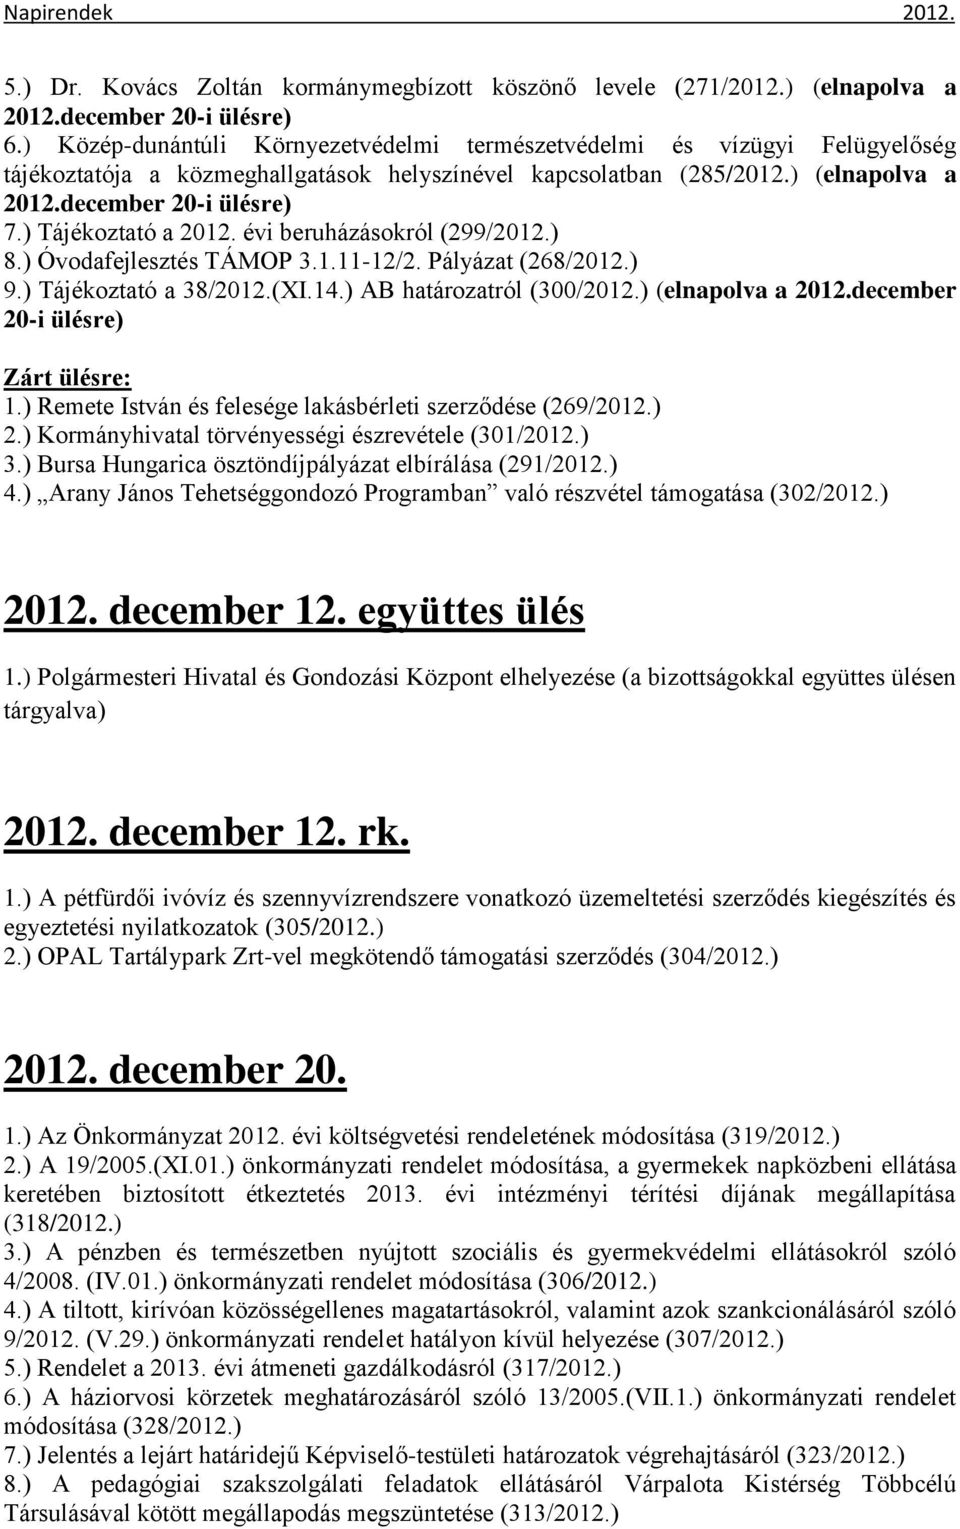 ) Tájékoztató a 2012. évi beruházásokról (299/2012.) 8.) Óvodafejlesztés TÁMOP 3.1.11-12/2. Pályázat (268/2012.) 9.) Tájékoztató a 38/2012.(XI.14.) AB határozatról (300/2012.) (elnapolva a 2012.